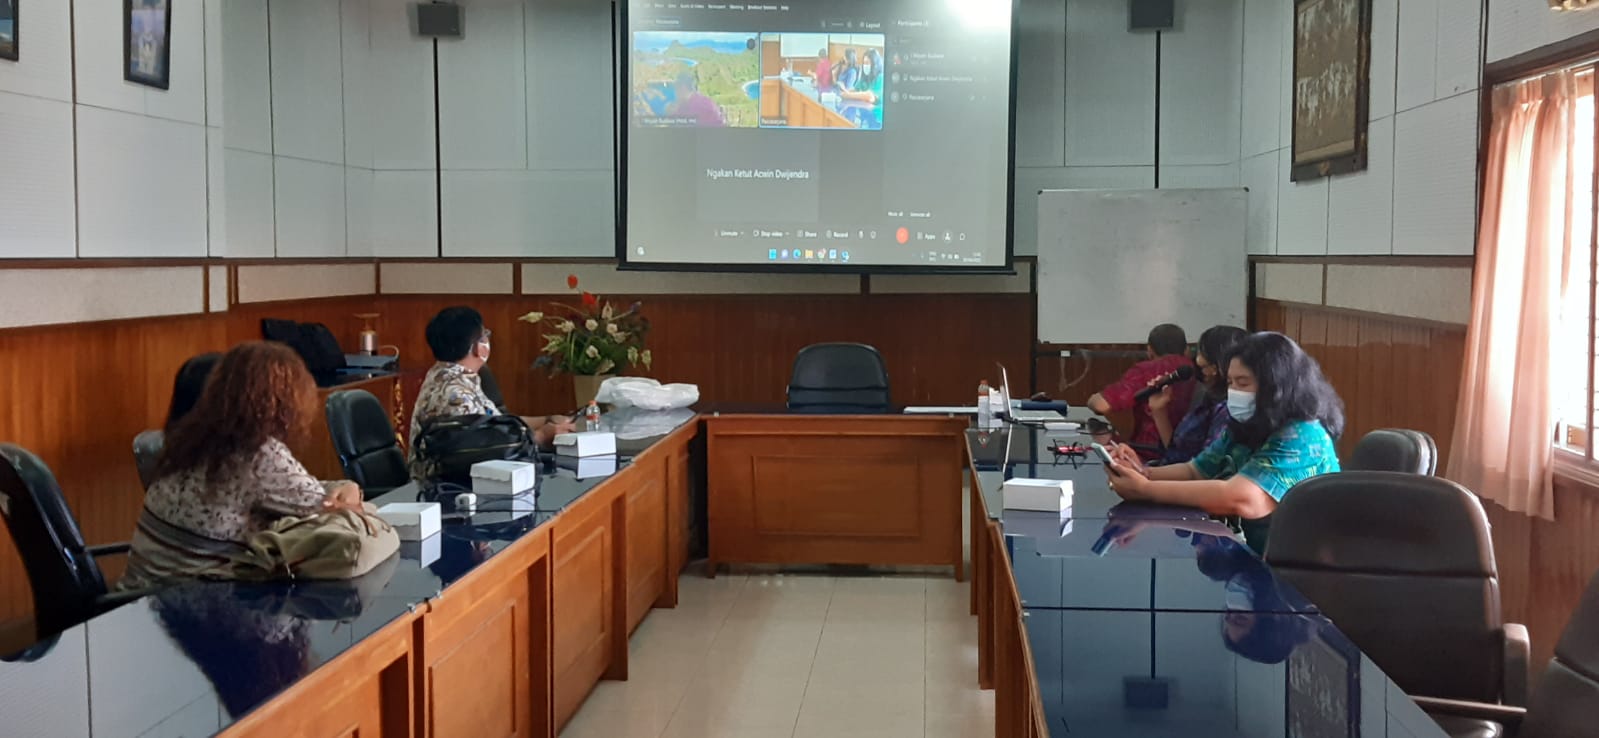 Pascasarjana Universitas Udayana mendirikan Prodi baru Pertama di Indonesia